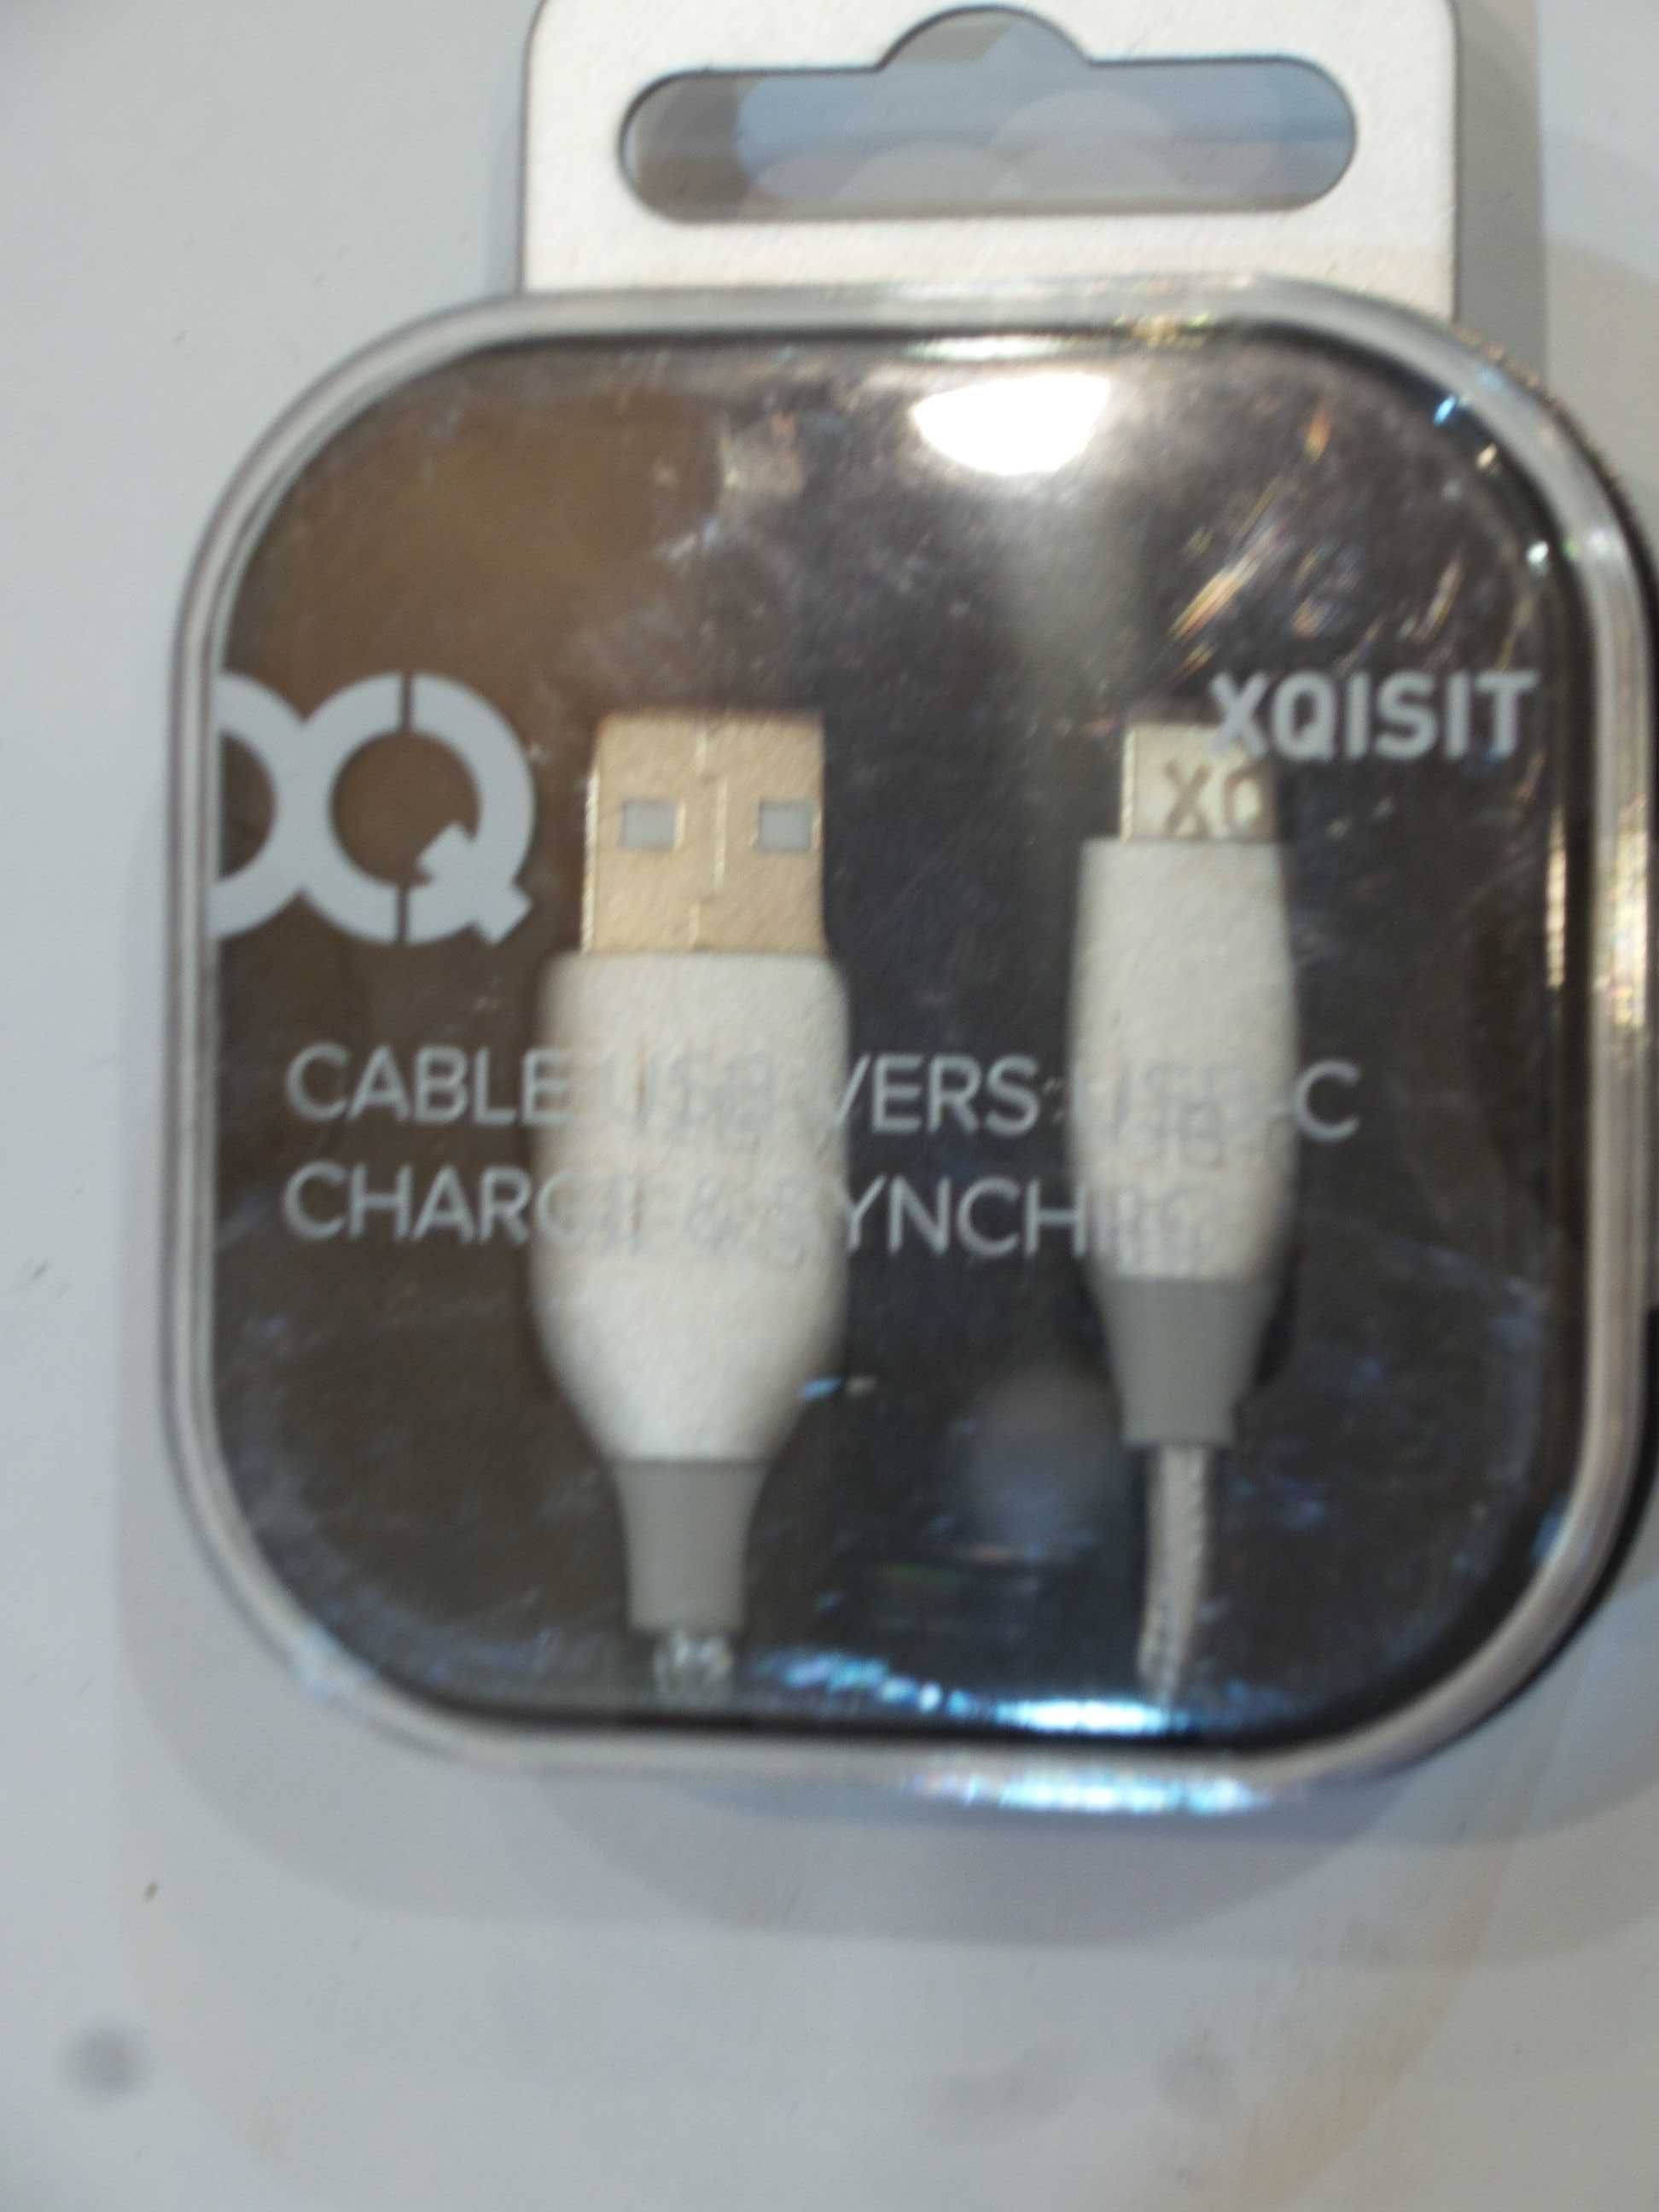 Kabel USB vers USB-C ładowanie i transfer